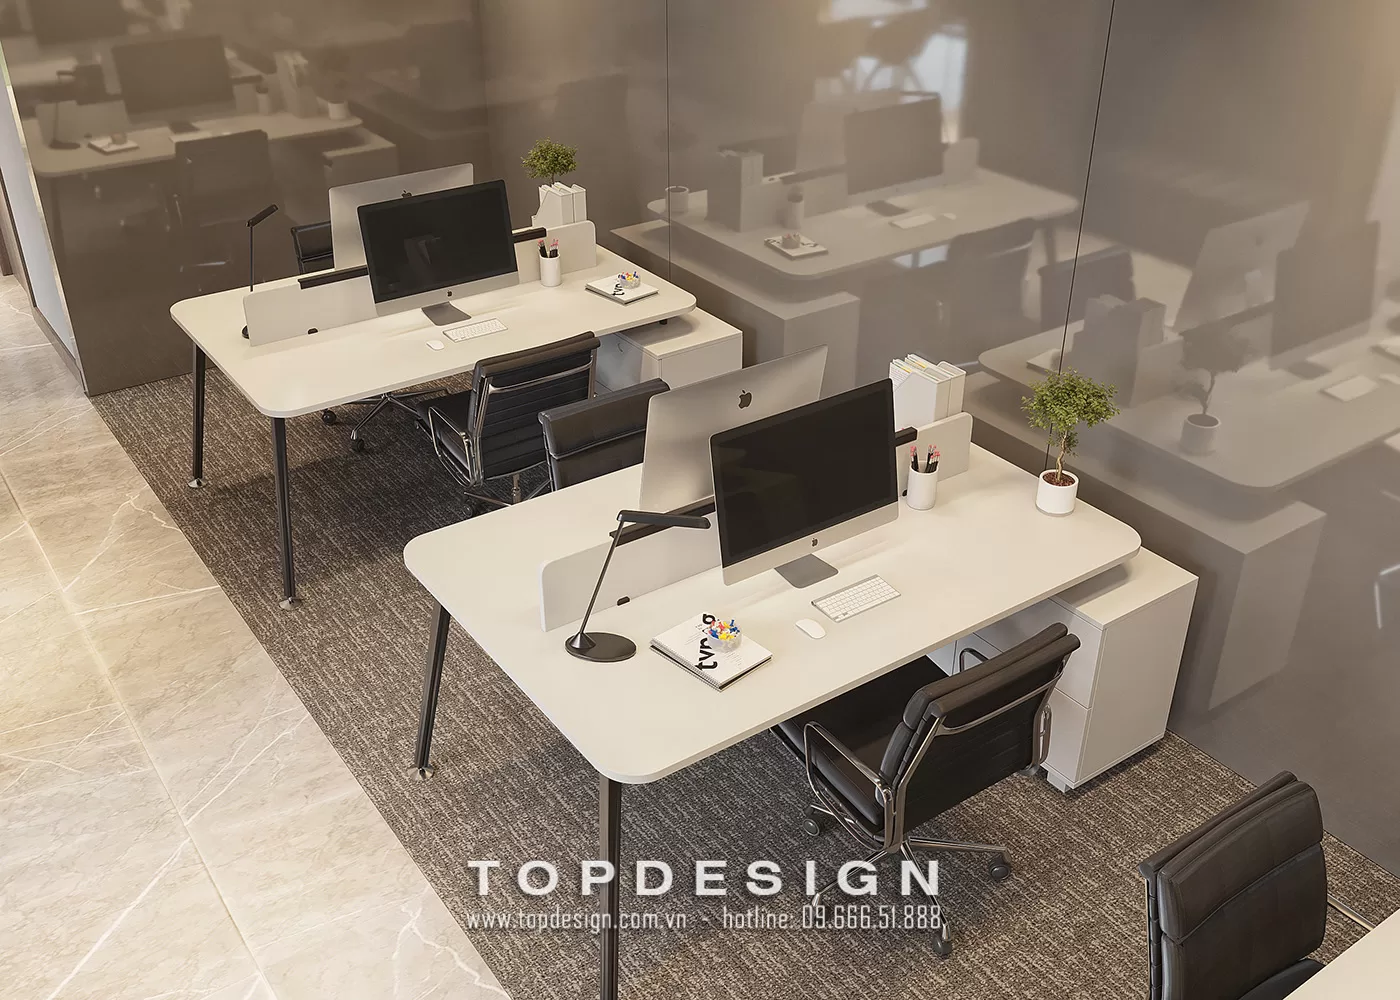 Quy chuẩn thiết kế văn phòng - TOPDESIGN - 12